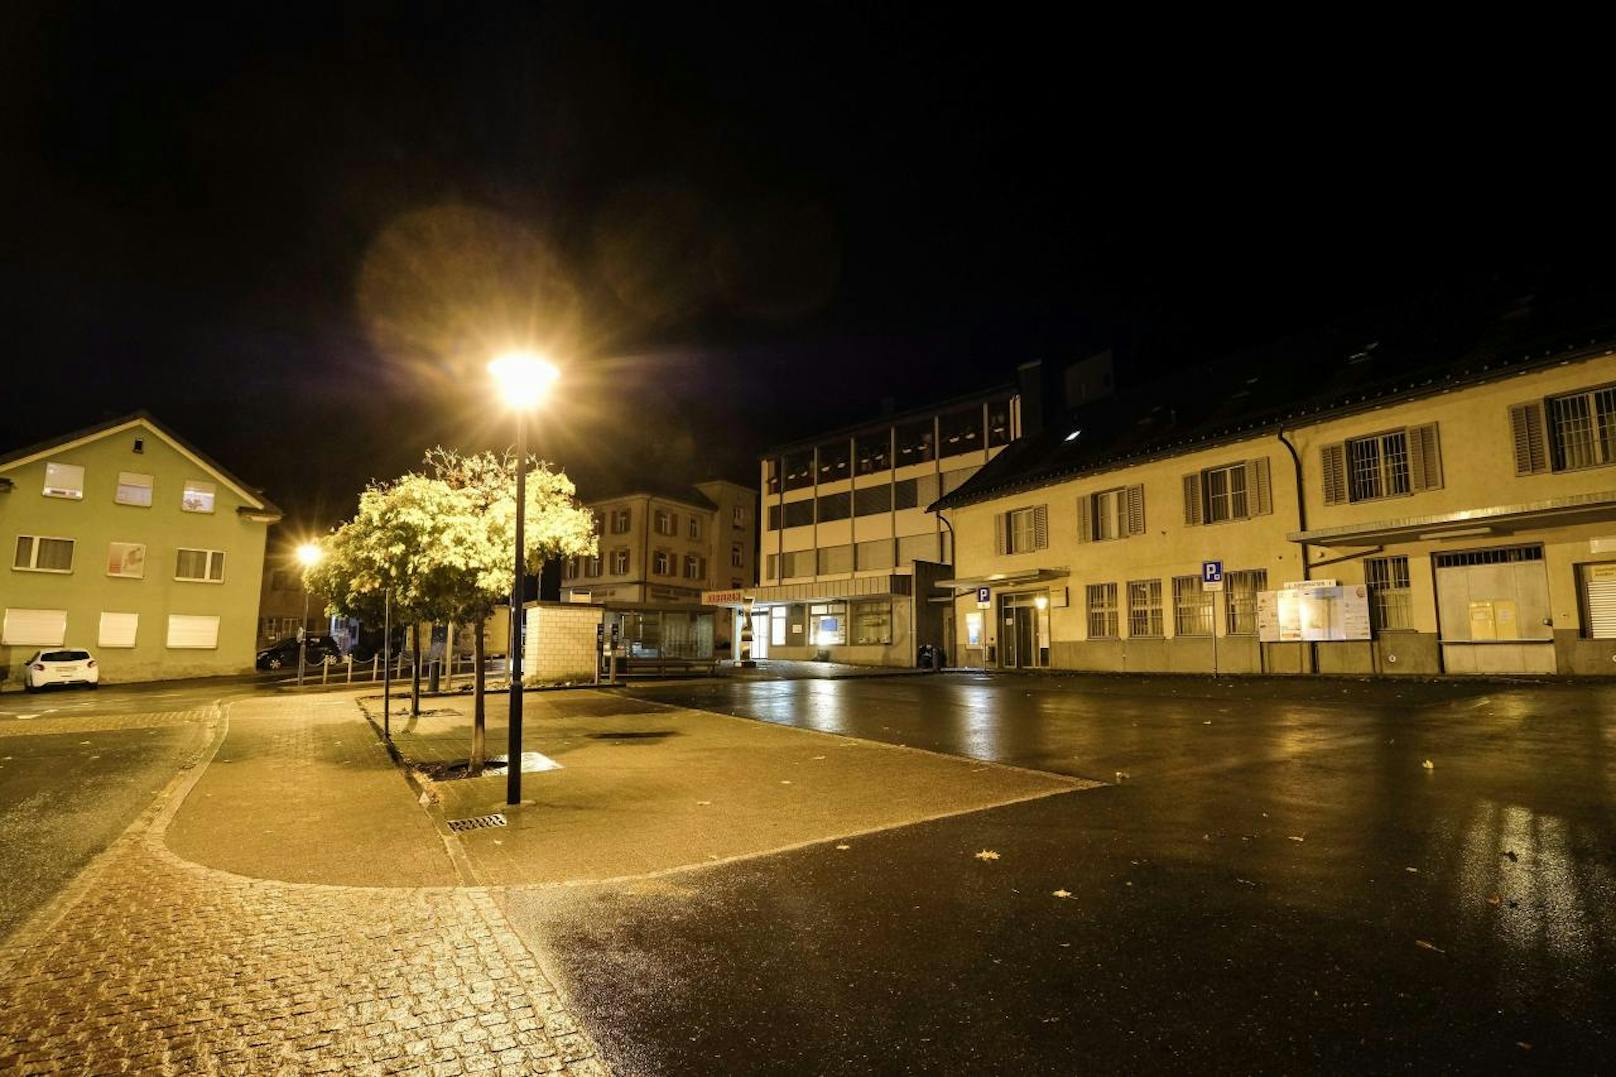 Am späten Sonntagabend attackierte ein 17-jähriger Lette in der Schweizer Ortschaft Flums mehrere Menschen mit einer Axt. Die Polizei stoppte ihn durch Schüsse und nahm ihn fest. Die Behörden gehen derzeit nicht von einem Terror-Hintergrund aus.